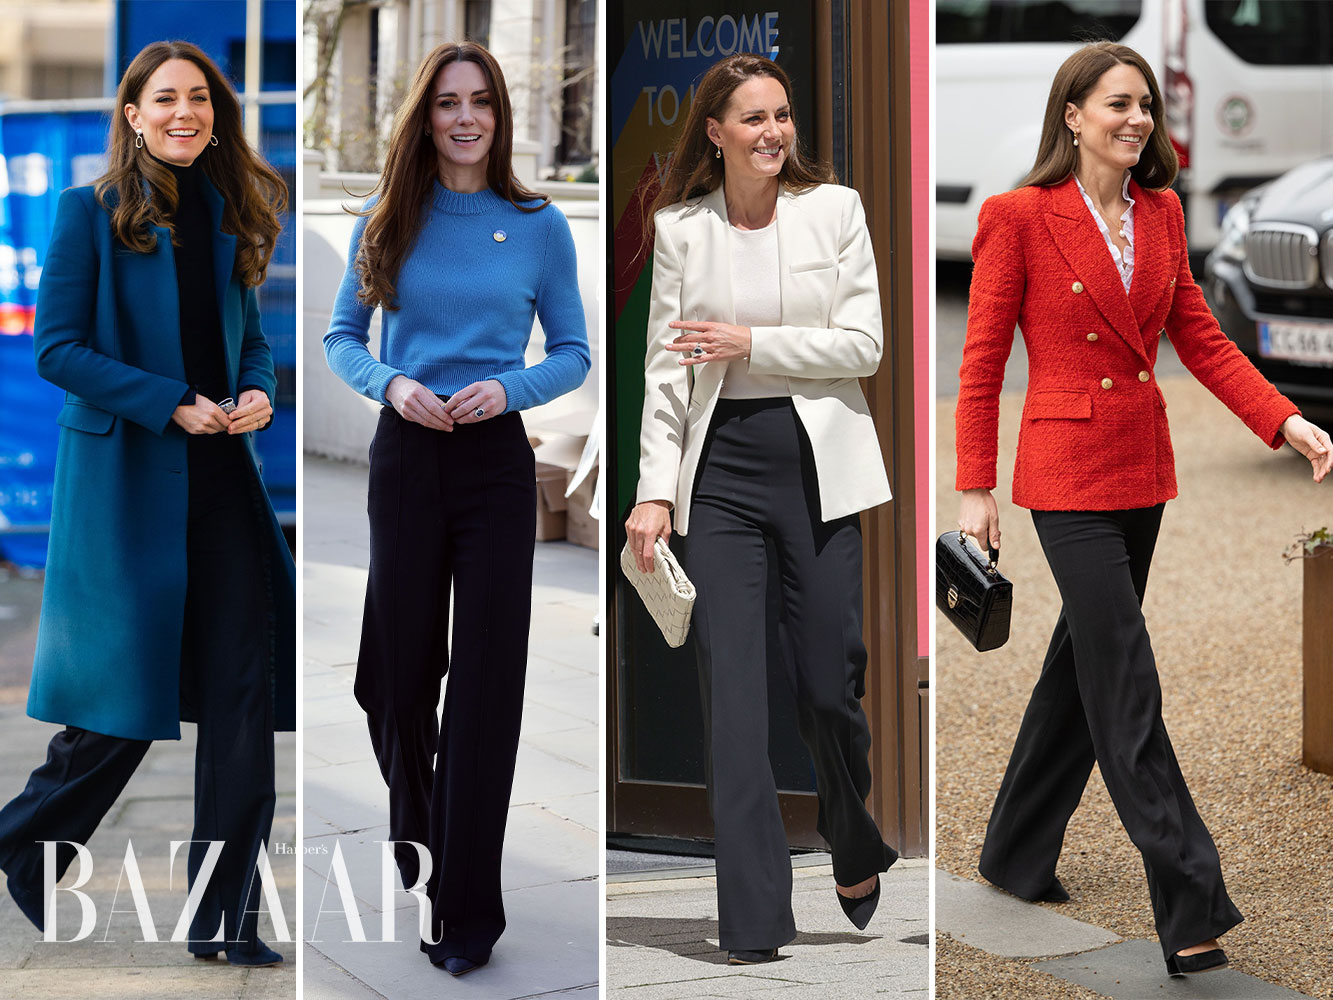 Công nương Kate Middleton chính là một trong những người dẫn đầu xu hướng, một biểu tượng thời trang nước Anh với phong cách sang trọng, thanh lịch, chuẩn quy tắc Hoàng gia nhưng vẫn mang tính ứng dụng cực cao. Ảnh: SAMIR HUSSEIN / GETTY IMAGES